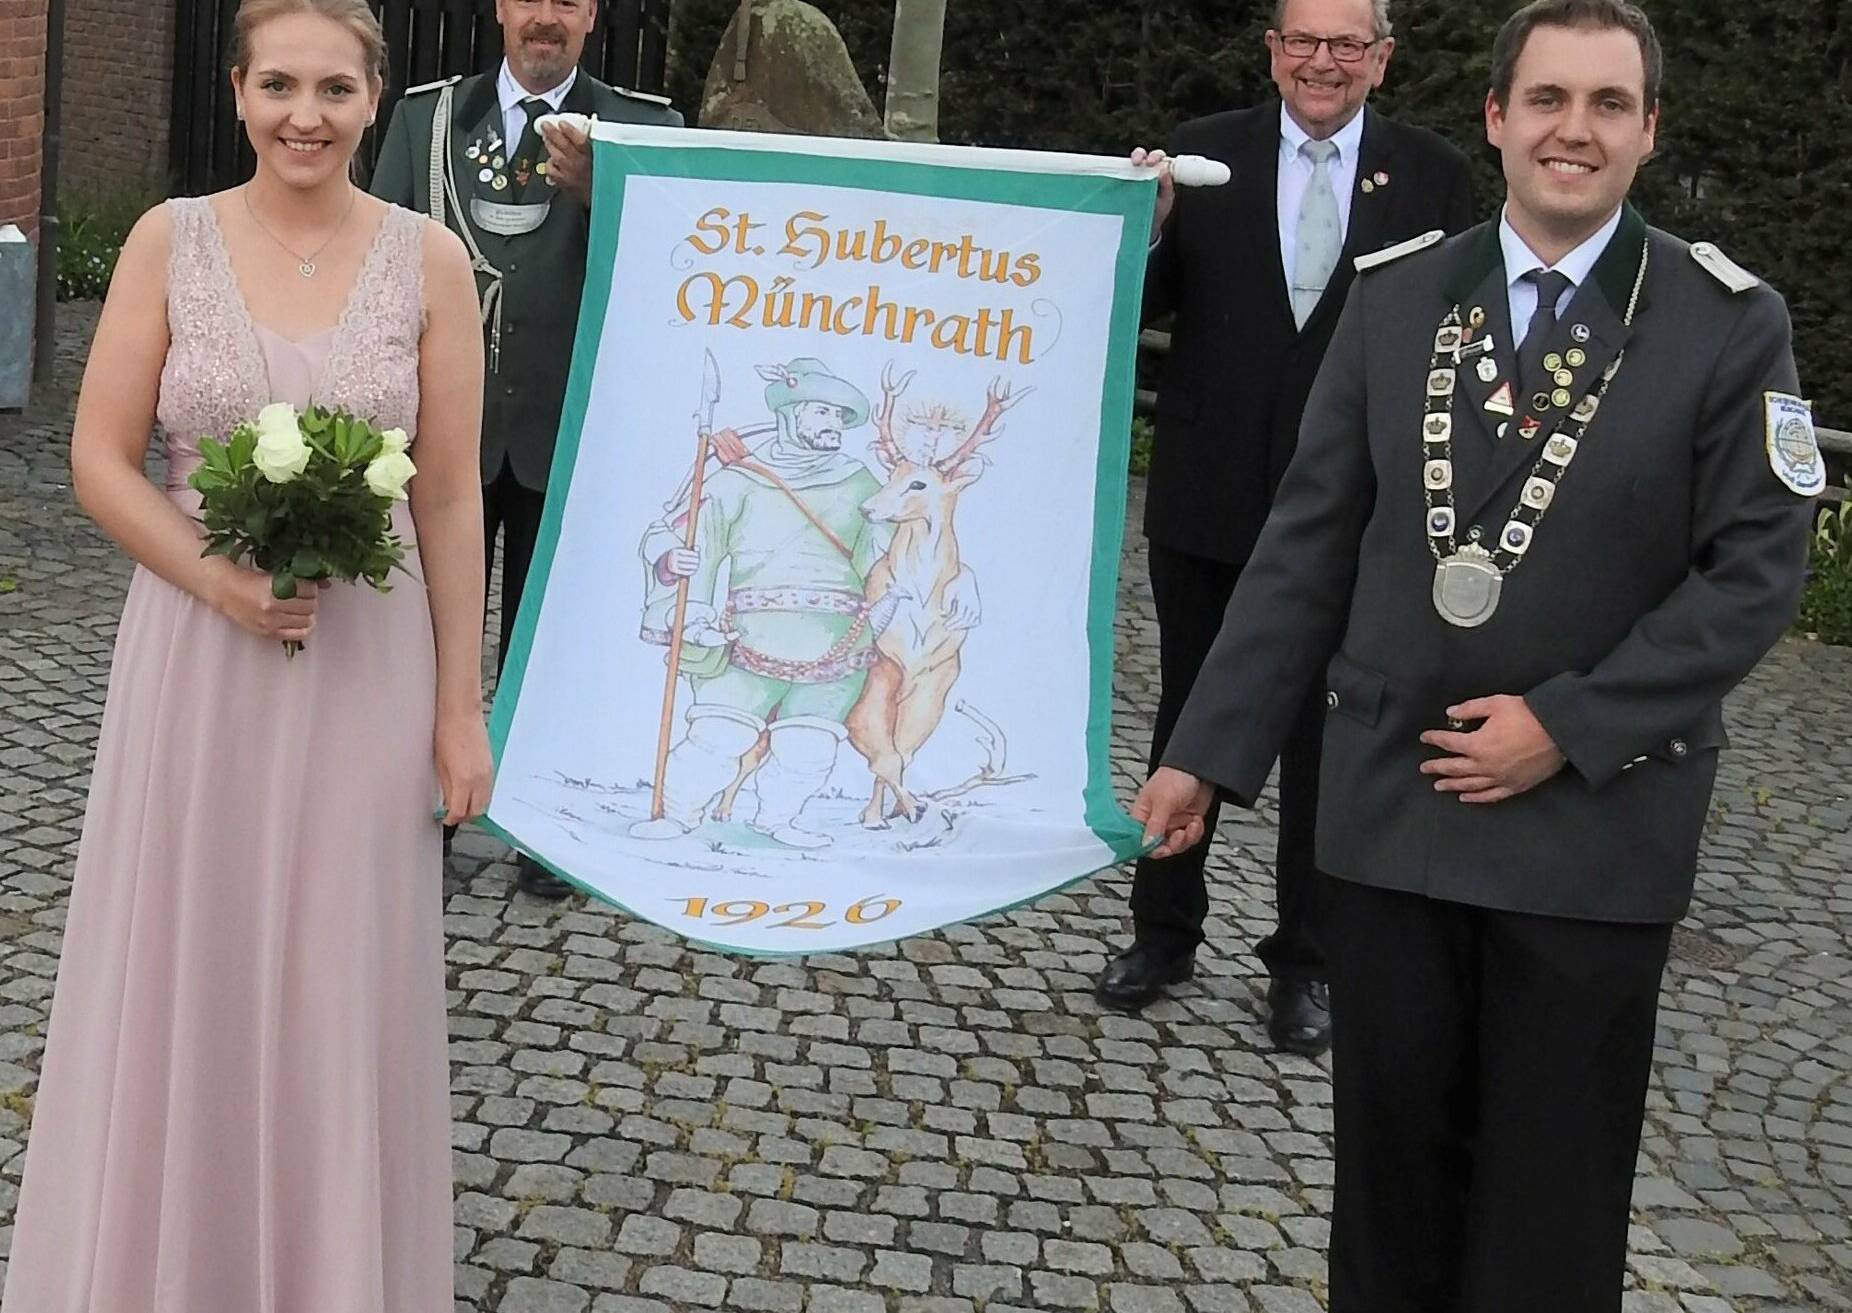  Vize-Bürgermeister Eddie Feuster brachte in diesem Jahr die Stadtfahne. Mit im Bild Prinz Chrstian Jansen, Prinzessin Alicia Pisters und Präsident Marco Volders. 